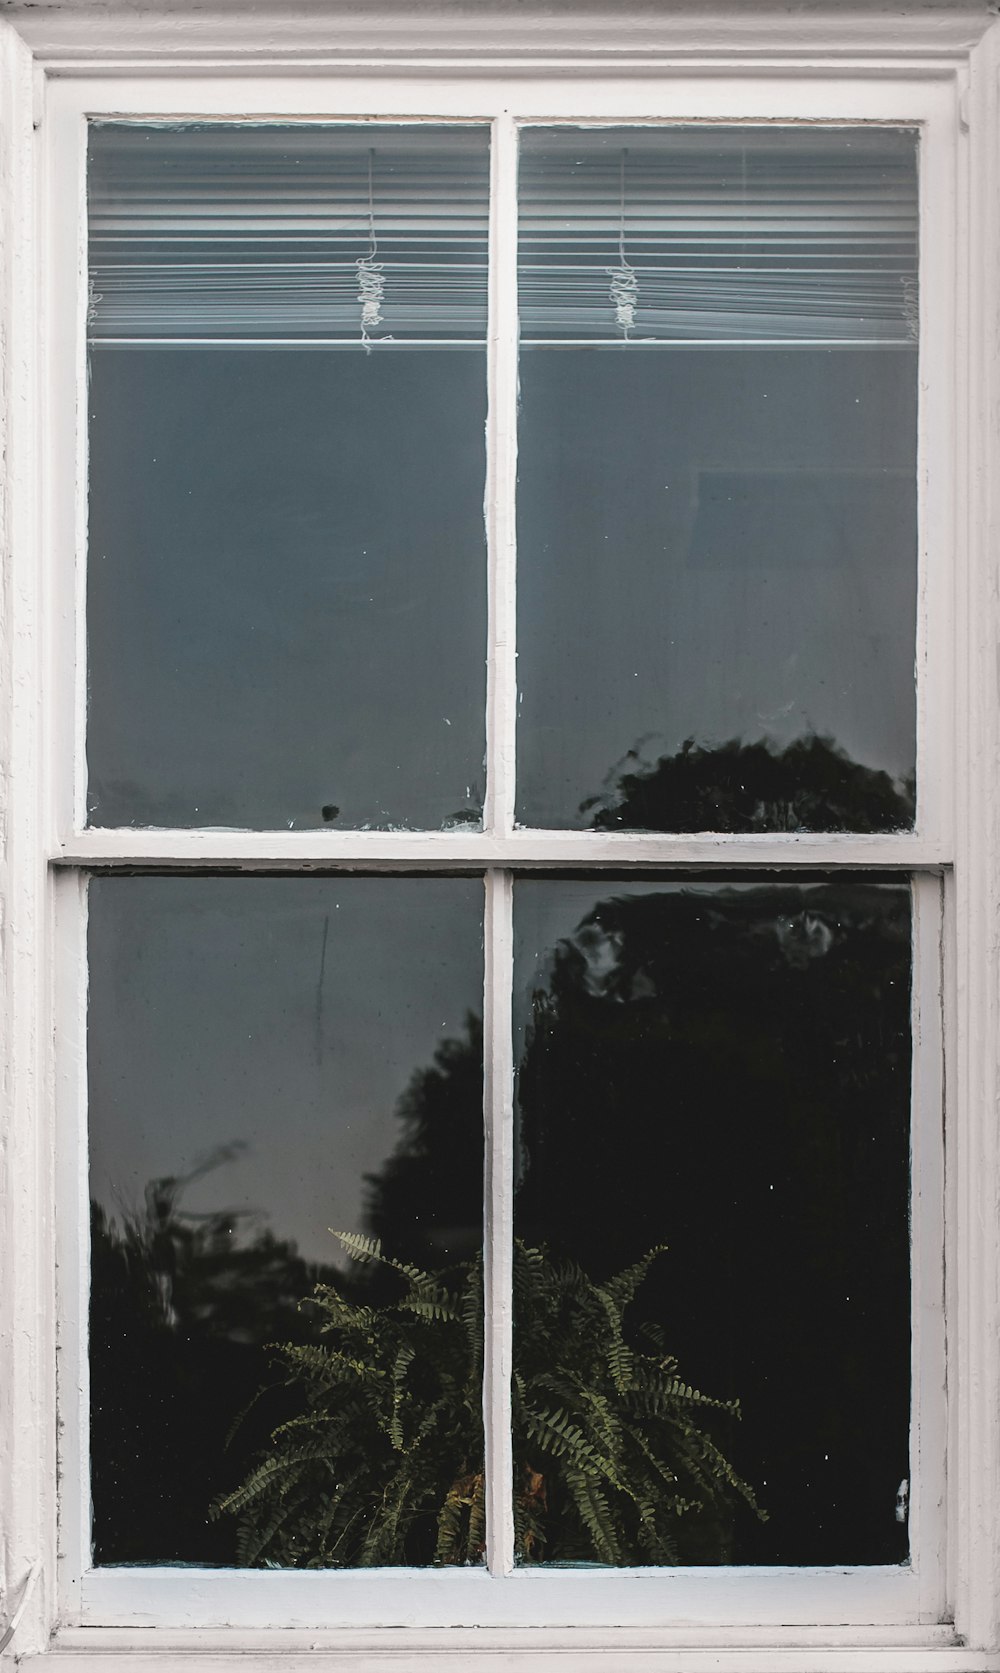 janela do painel de vidro da moldura de madeira branca com persianas brancas